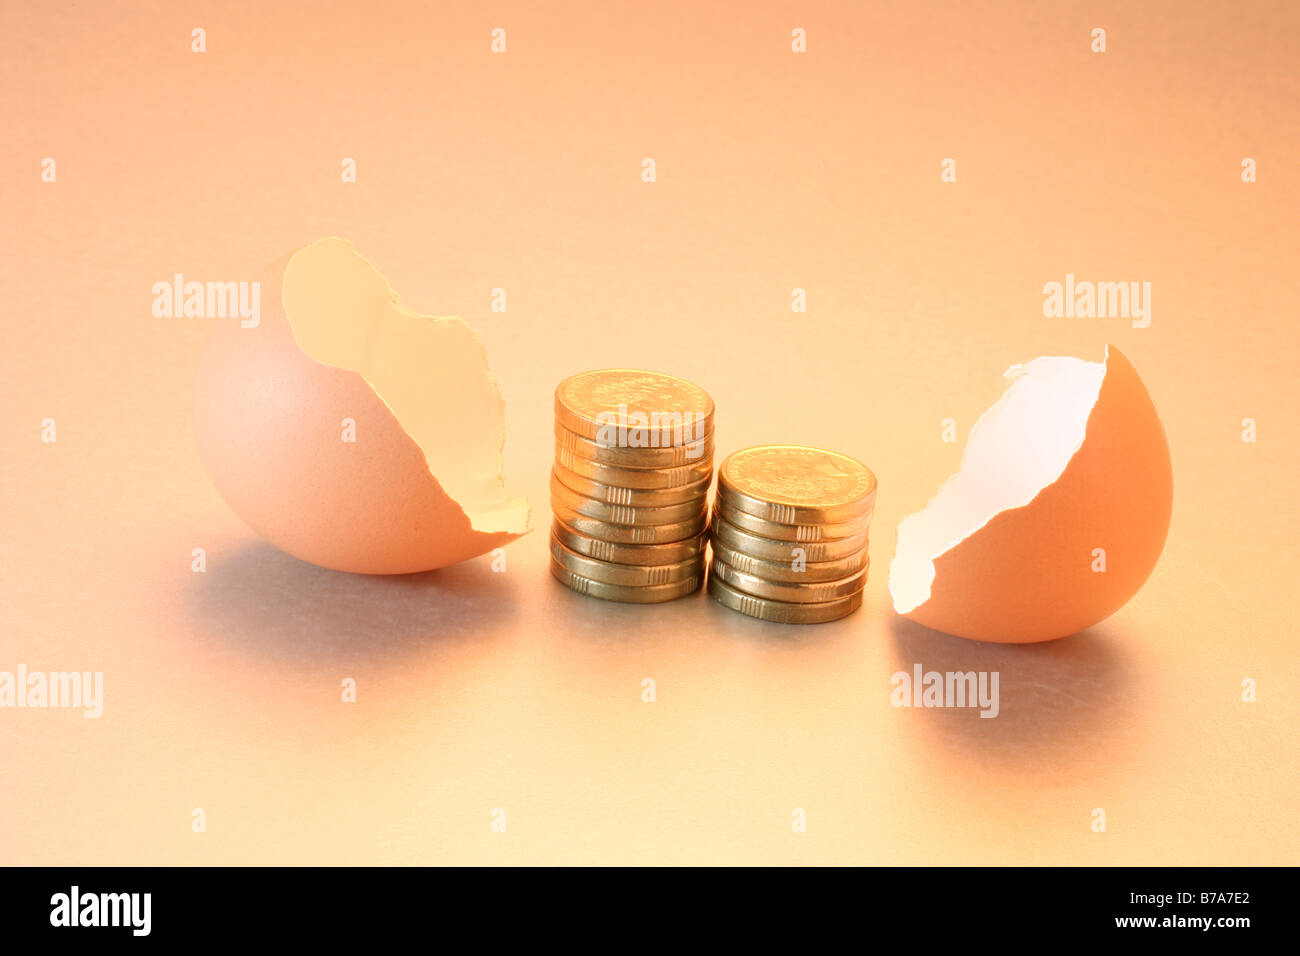 Coins between broken egg shells Stock Photo